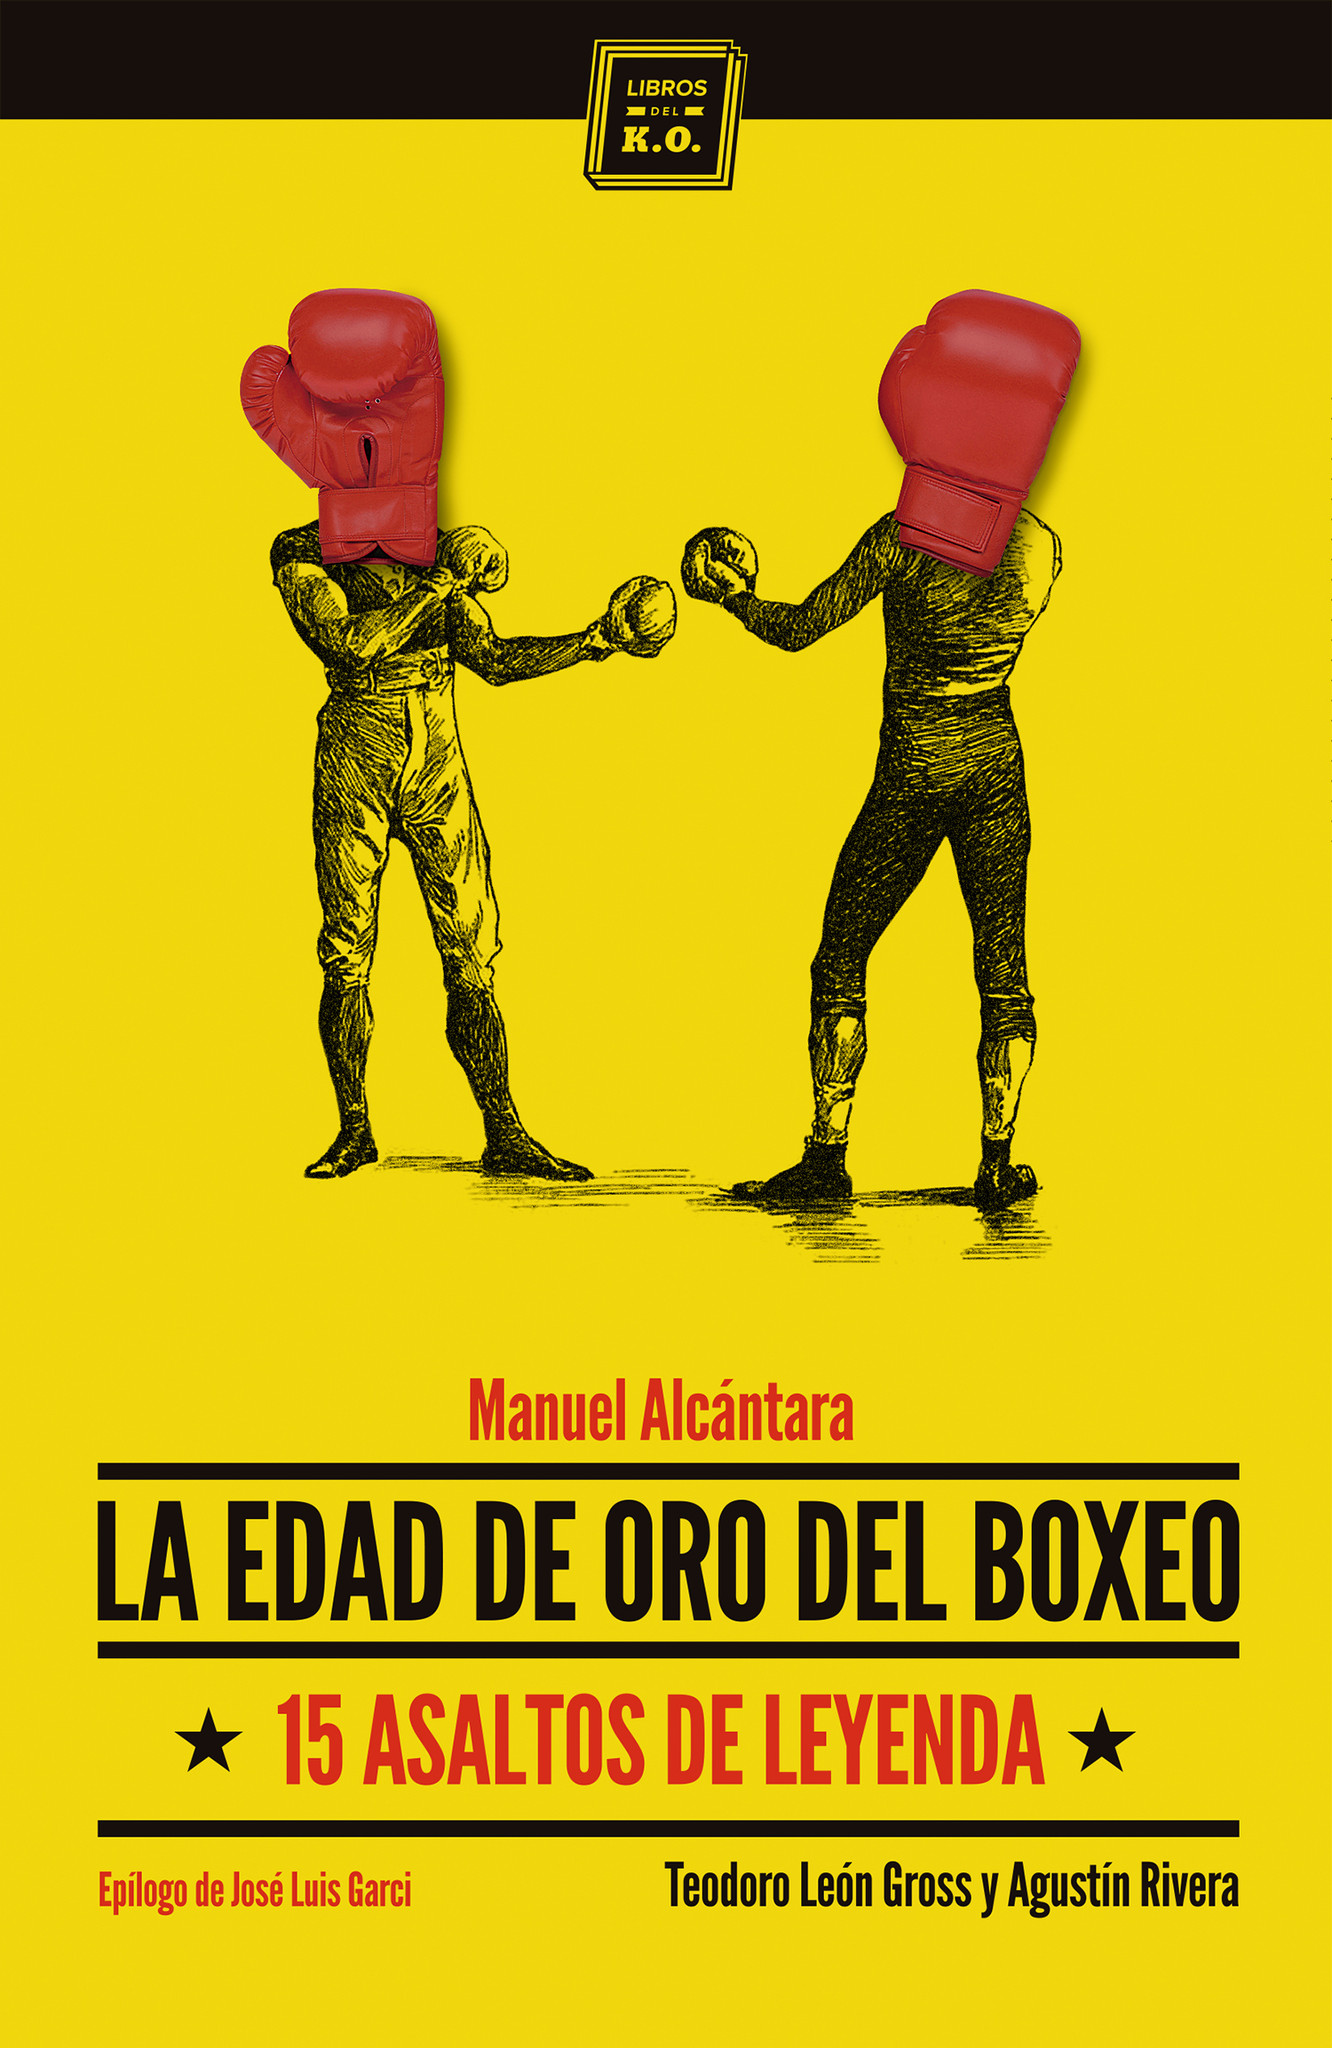 Libro publicado por Teodoro León Gross y Agustín Rivera